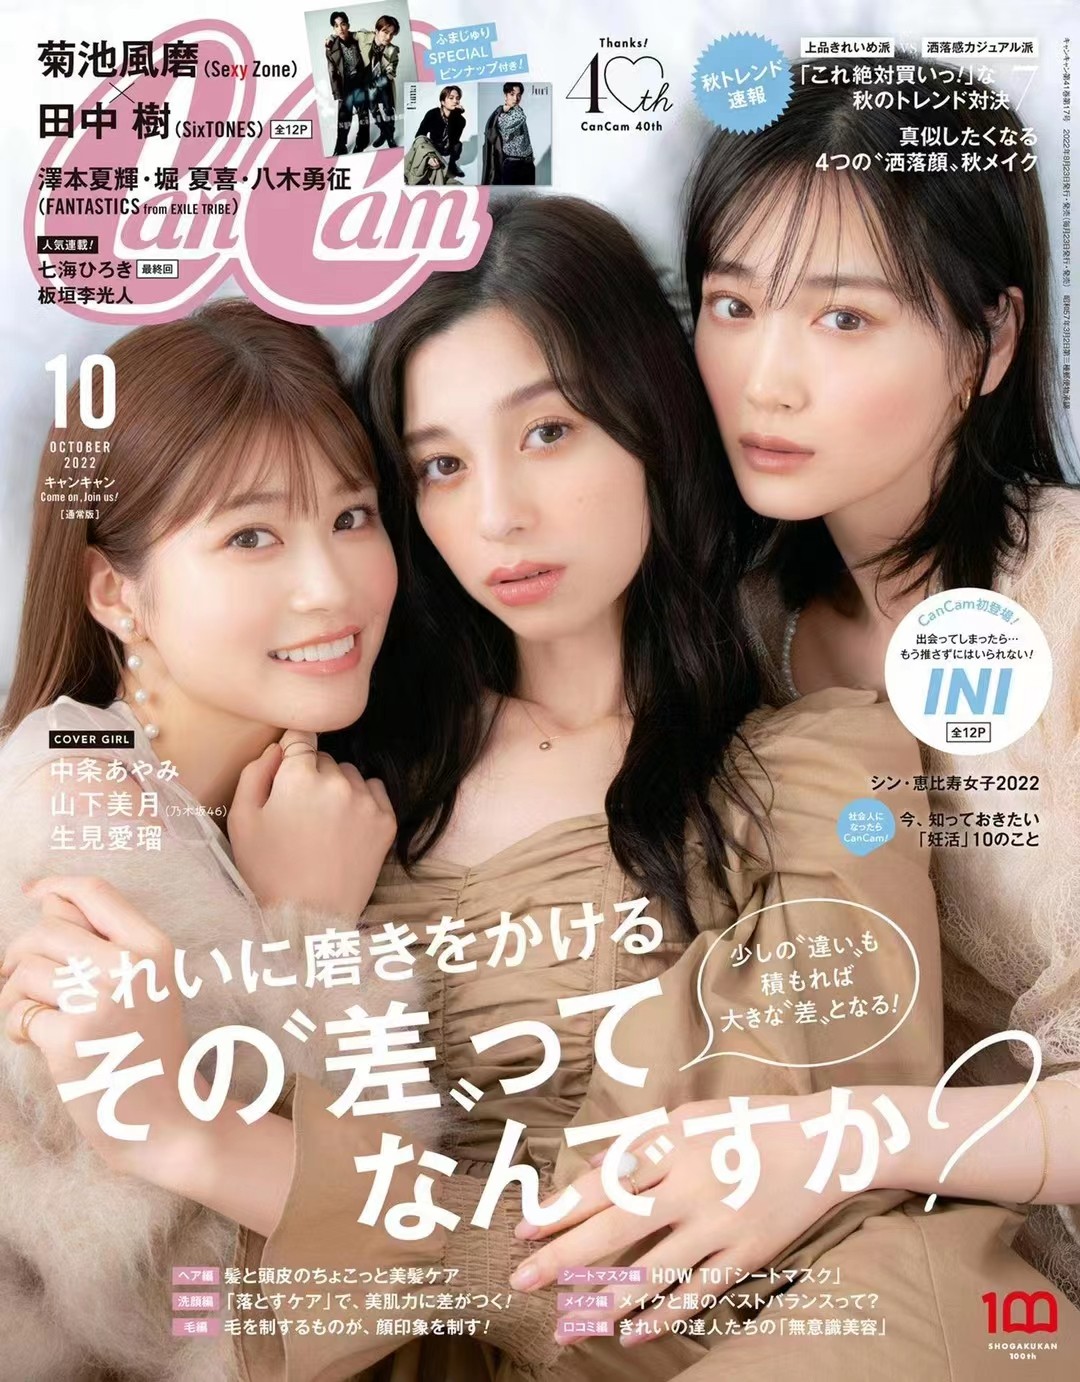 【瑜伽健身上新】 【日本】 018 CanCam 2022年10月 日本时尚女性美容护肤服饰杂志